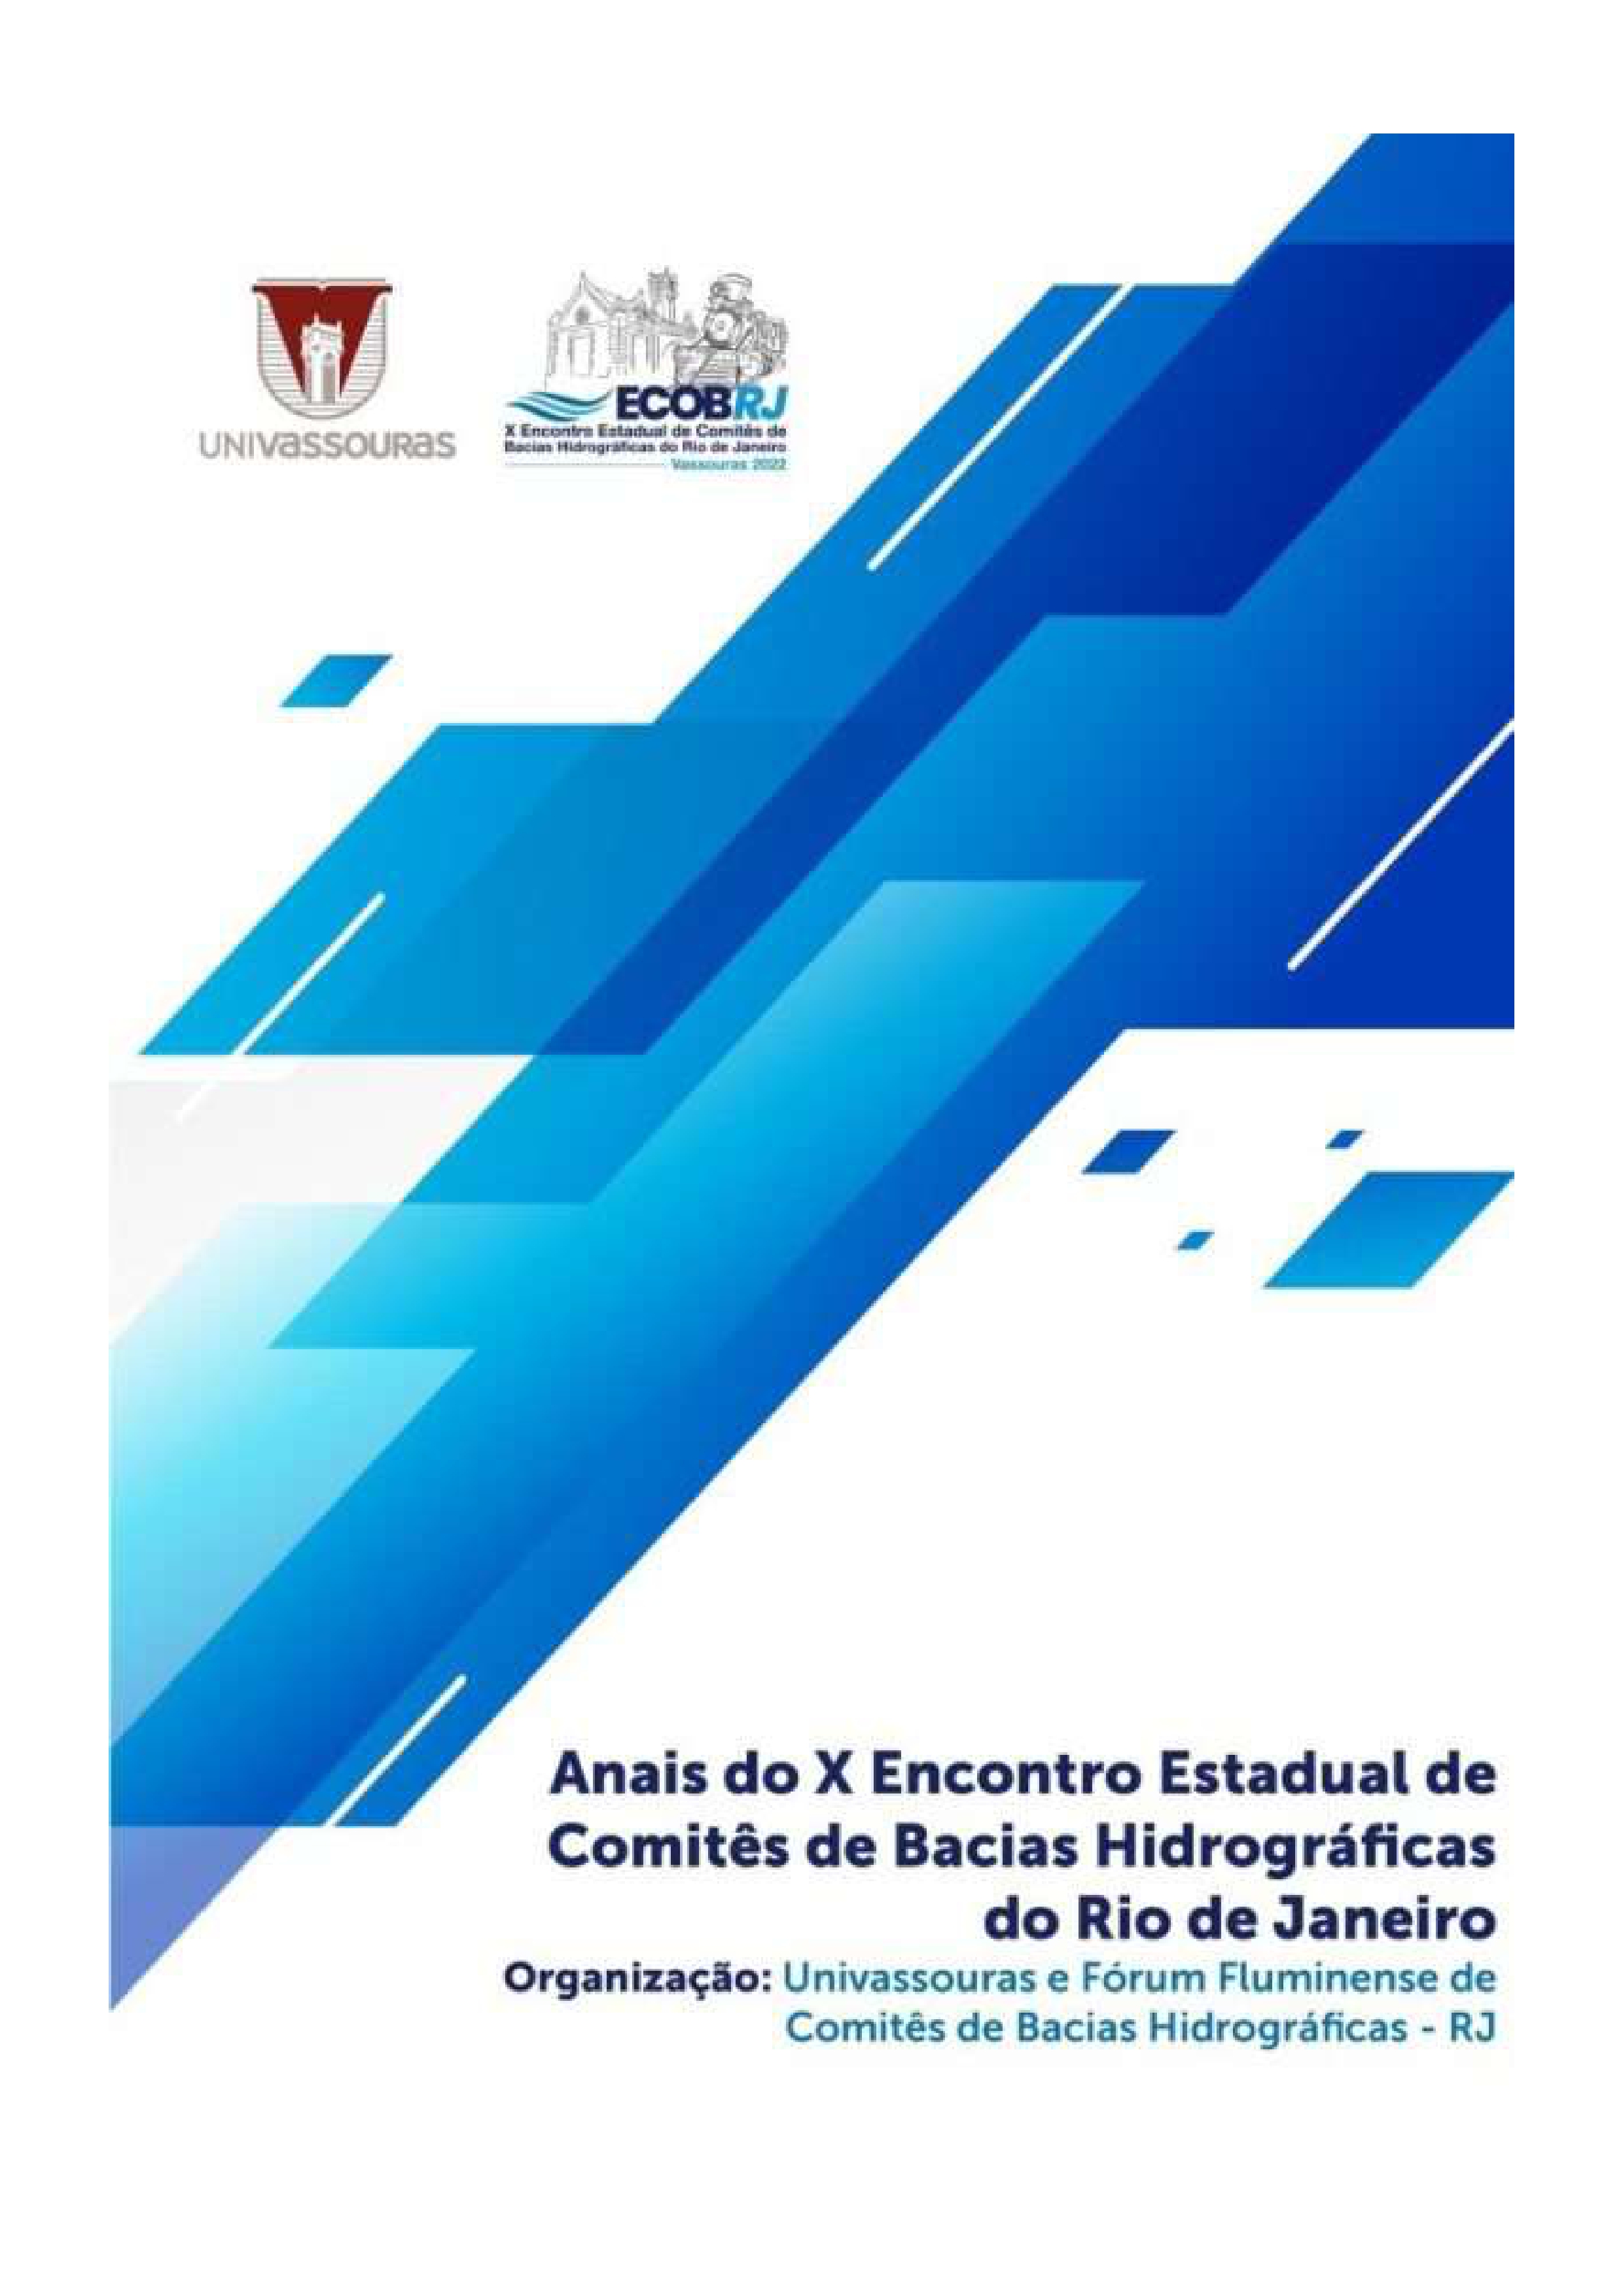 					View 2024: Anais do X Encontro de Comitês de Bacias Hidrográficas do Rio de Janeiro – ECOB
				